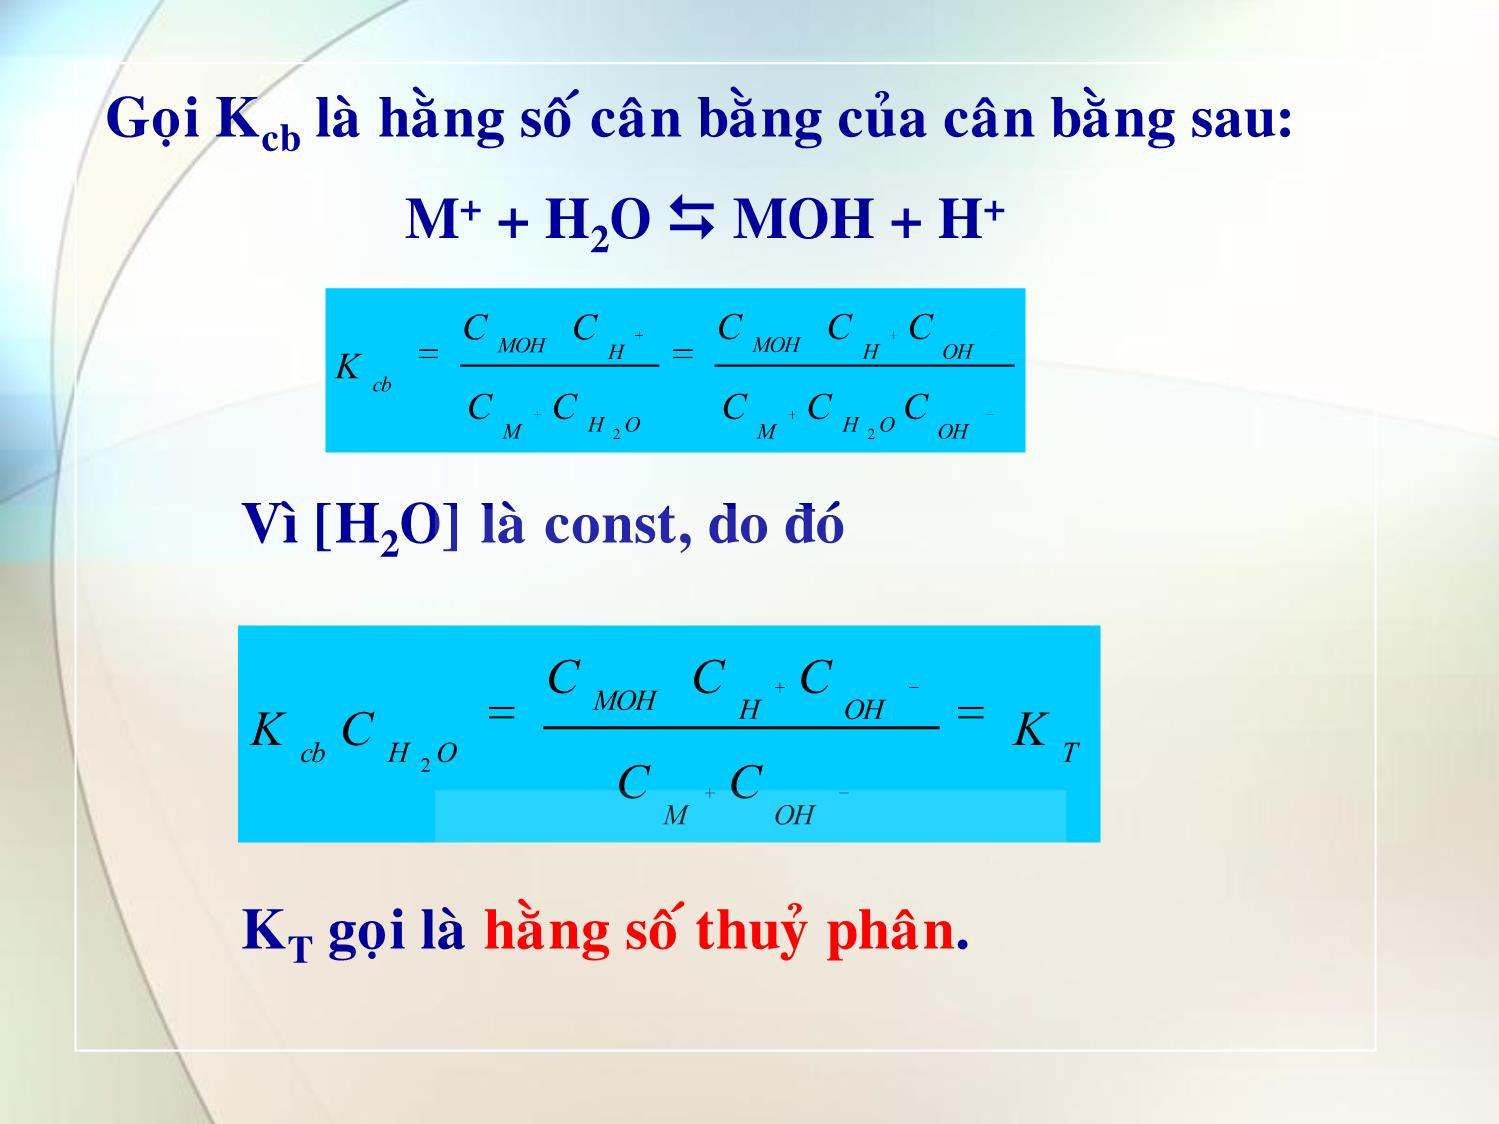 Bài giảng Hóa đại cương - Chương 15: Phản ứng trao đổi ion và cân bằng thủy phân-trung hòa - Huỳnh Kỳ Phương Hạ trang 7